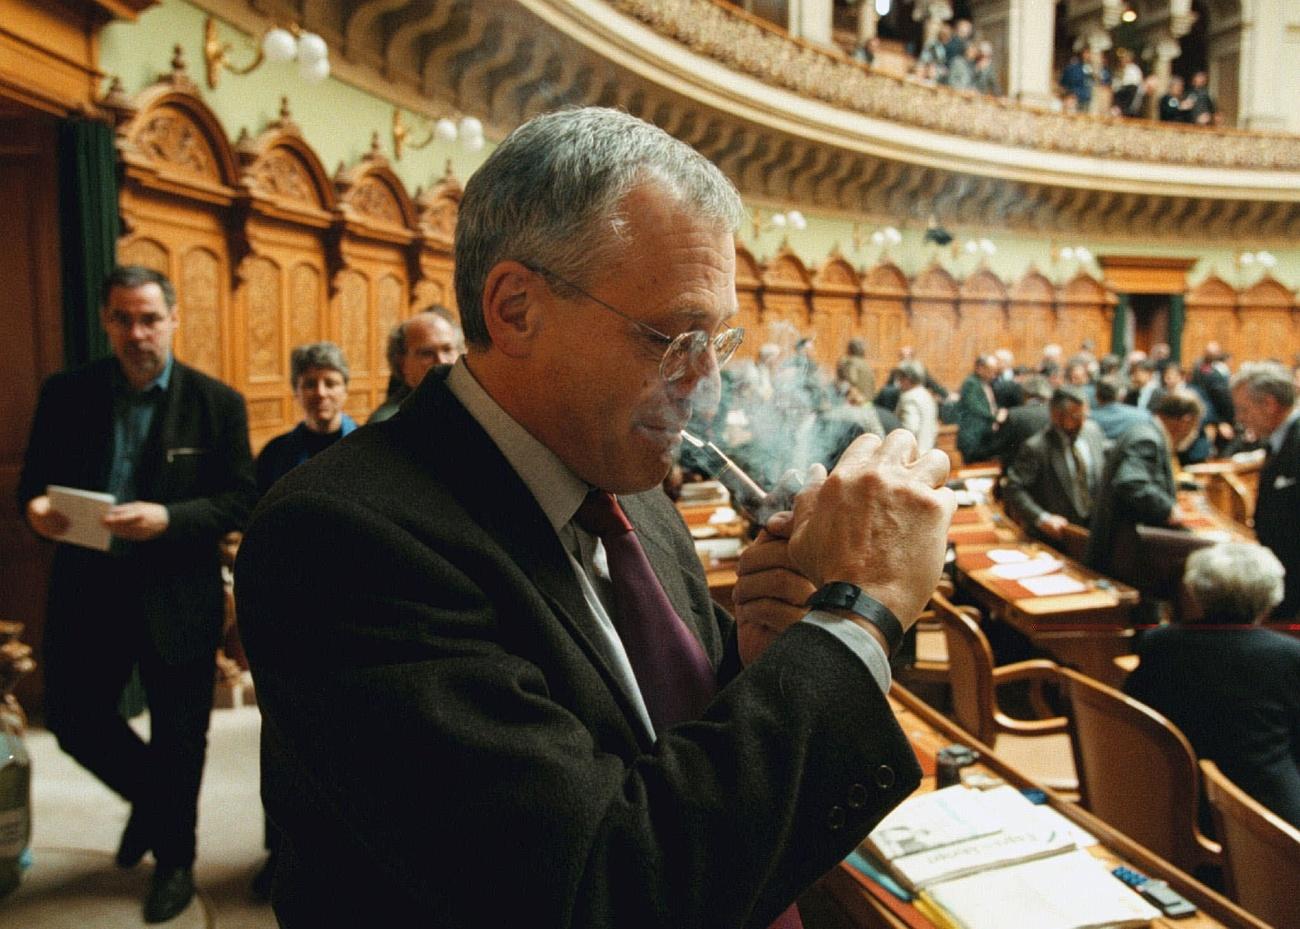 Un politicien s allume une pipe au milieu de la salle du parlement suisse